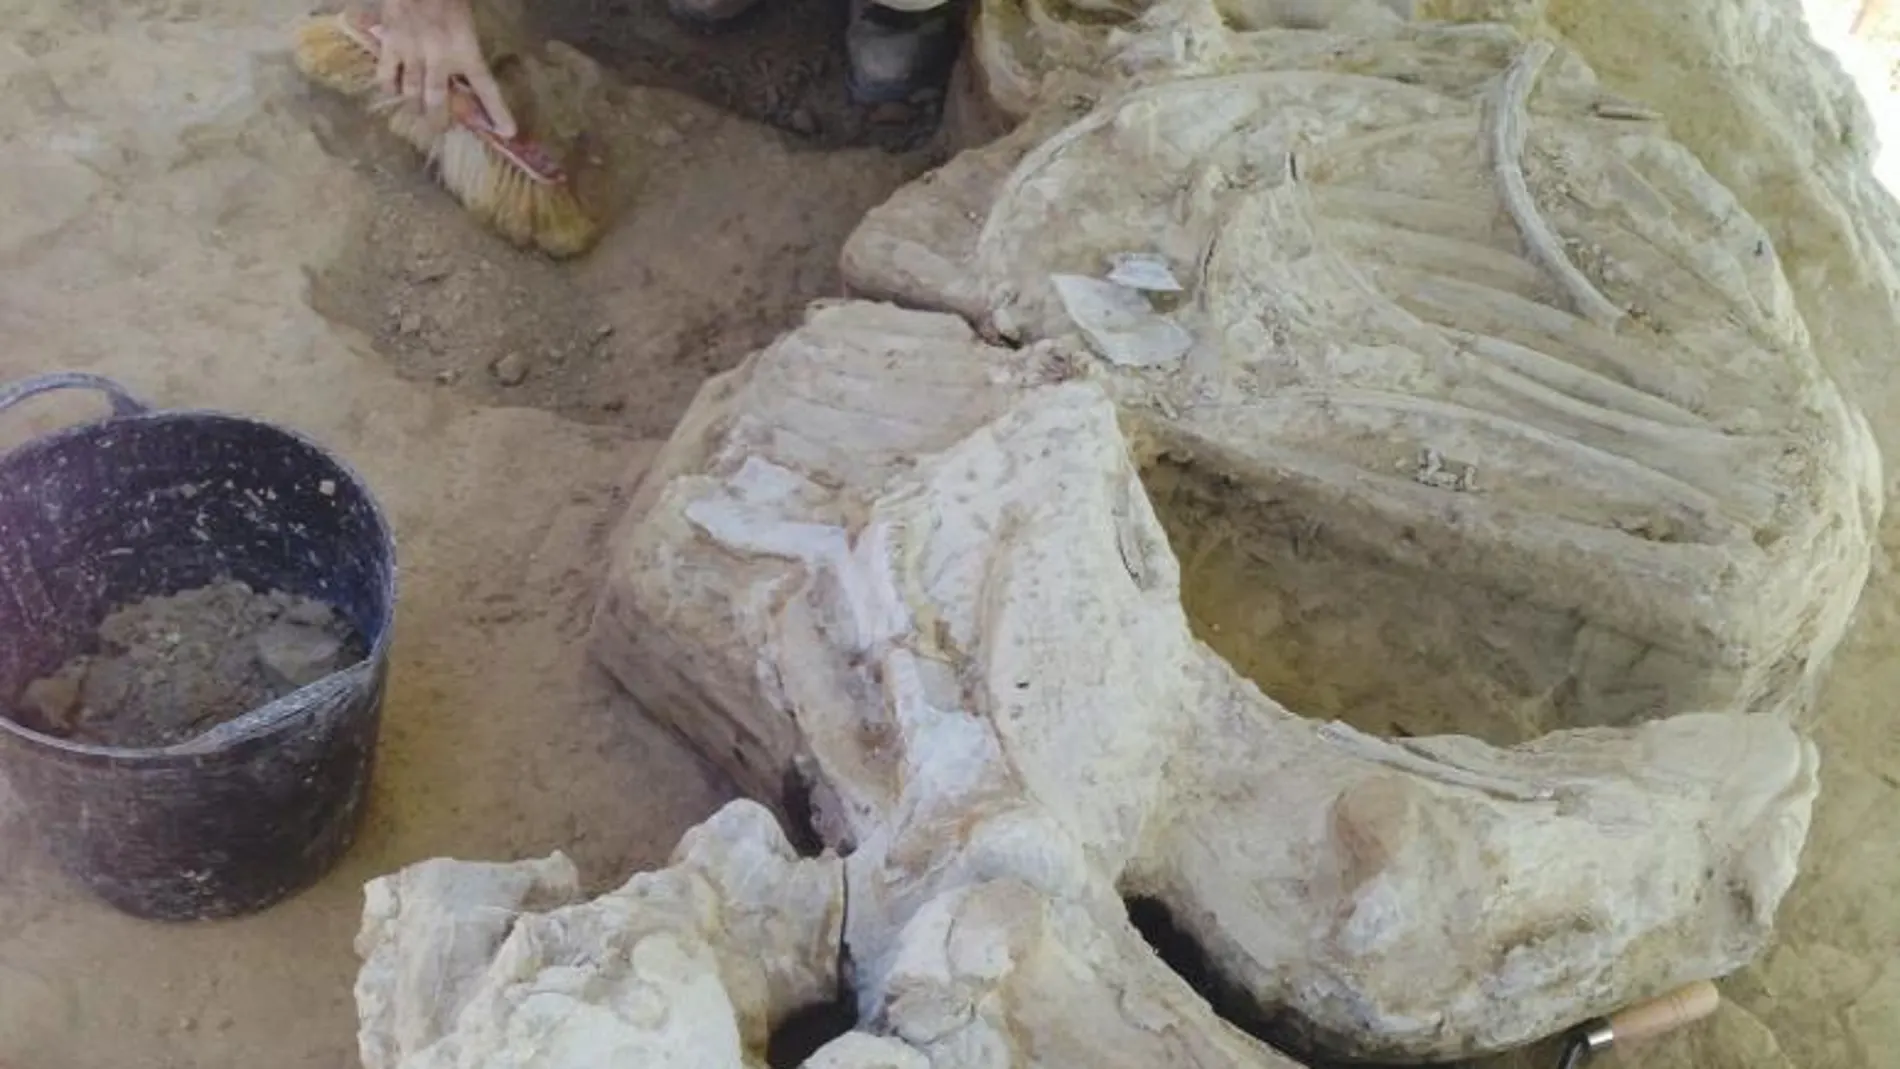 Imagen facilitada por el Gobierno de La Rioja del esqueleto de un rinoceronte adulto de unos 3,2 millones de años de antigüedad